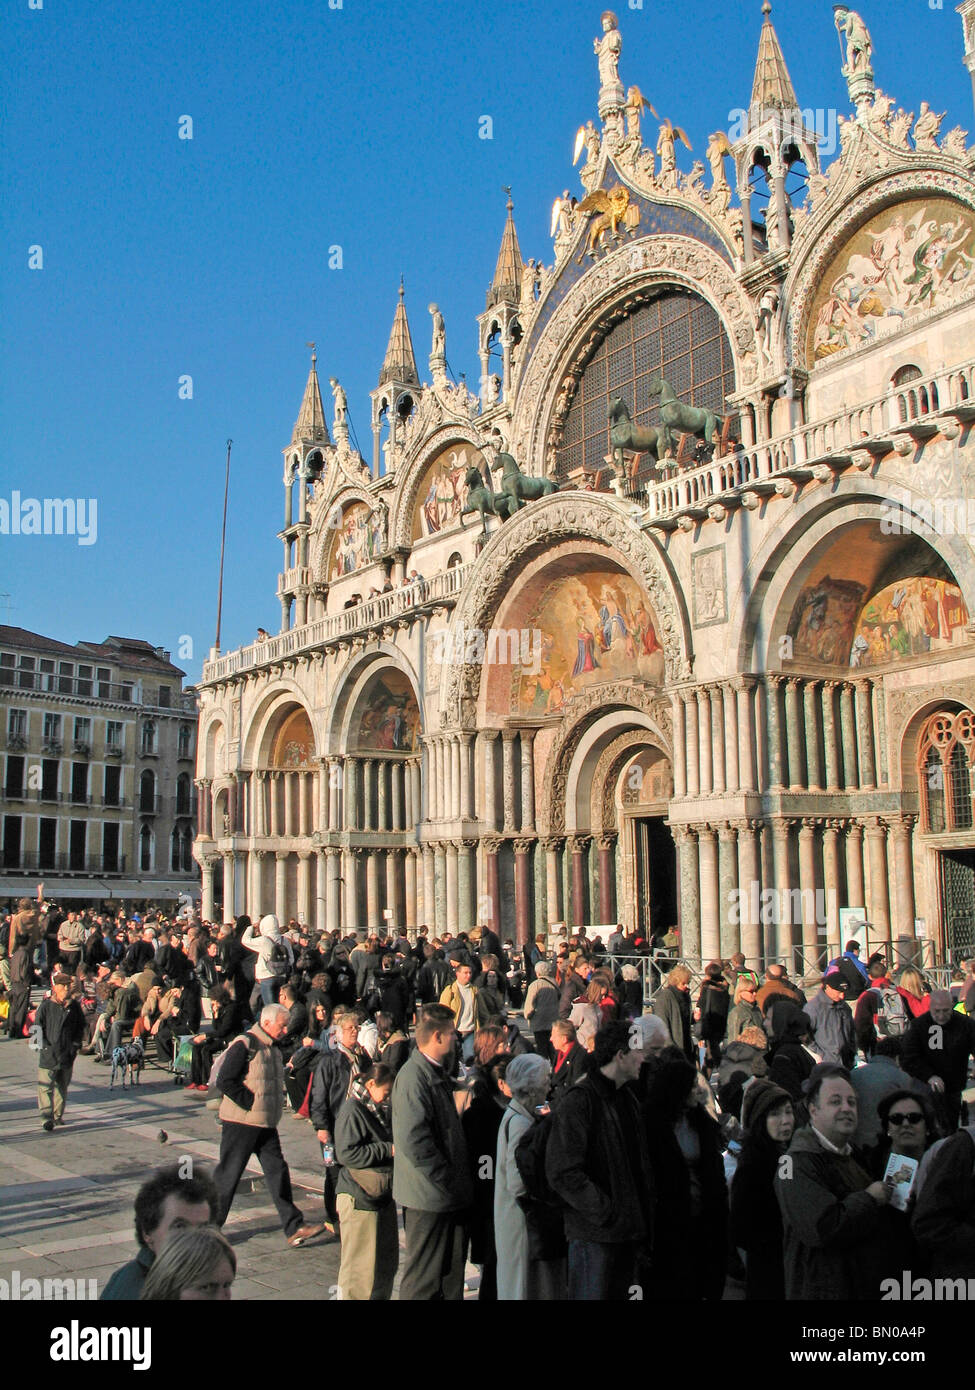 La basilique de San Marco, Venise - touristes Banque D'Images